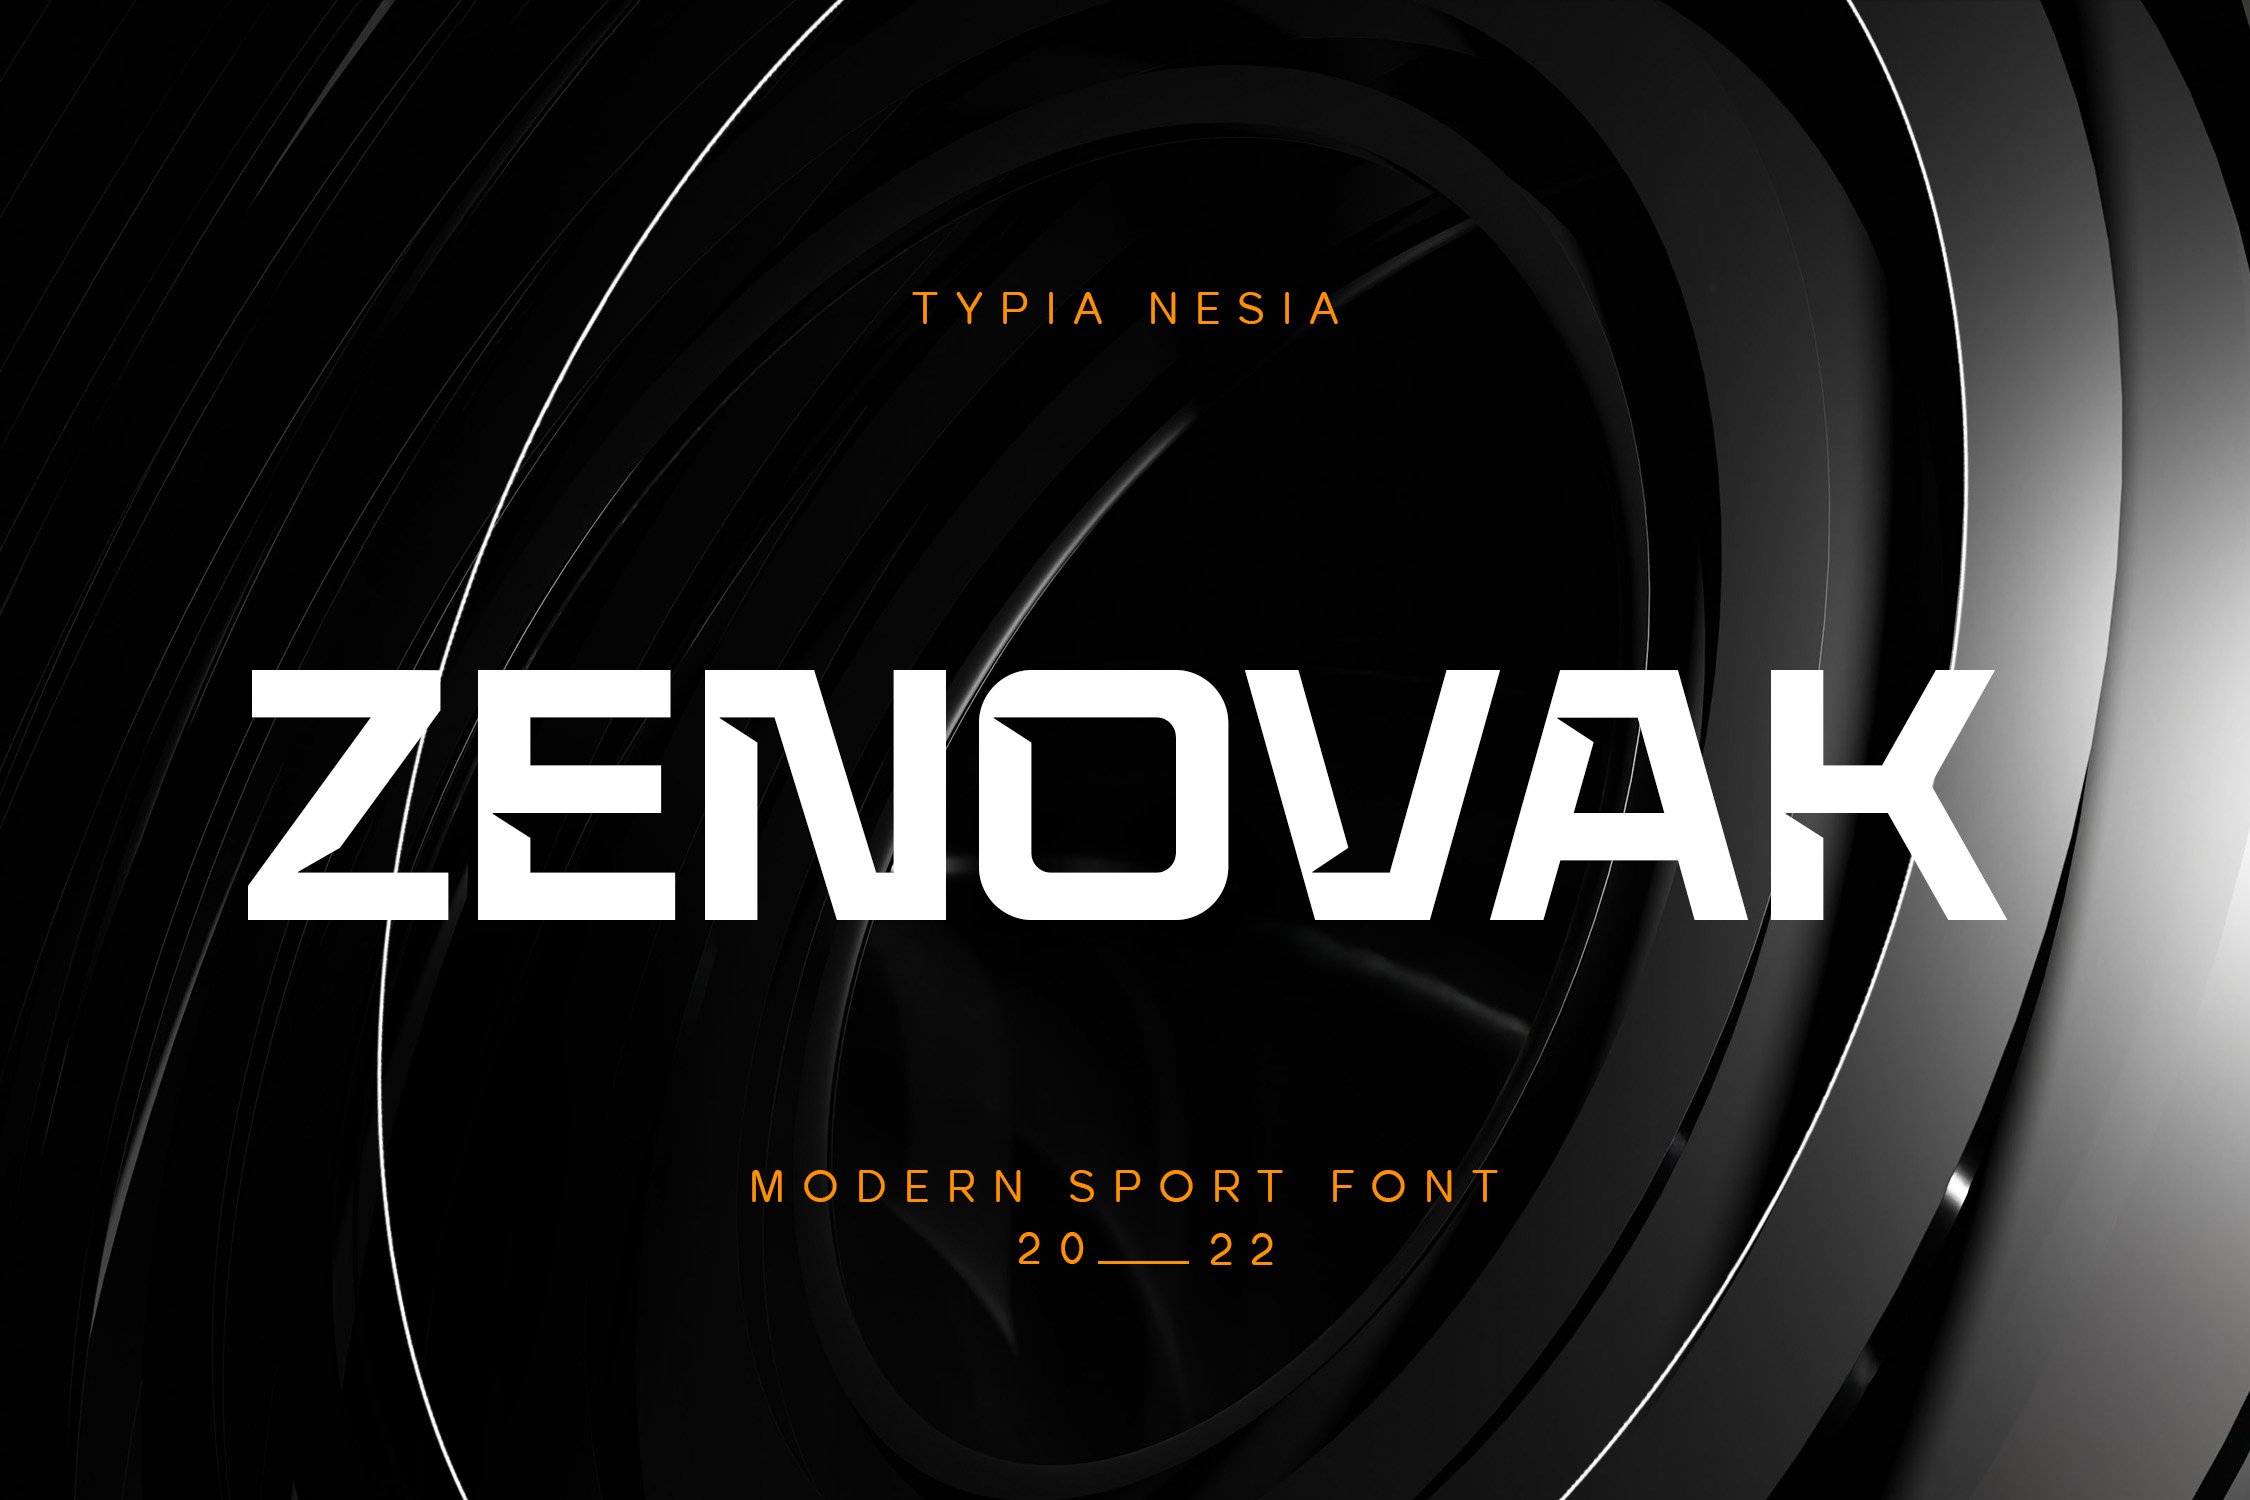 Zenovak cover image.